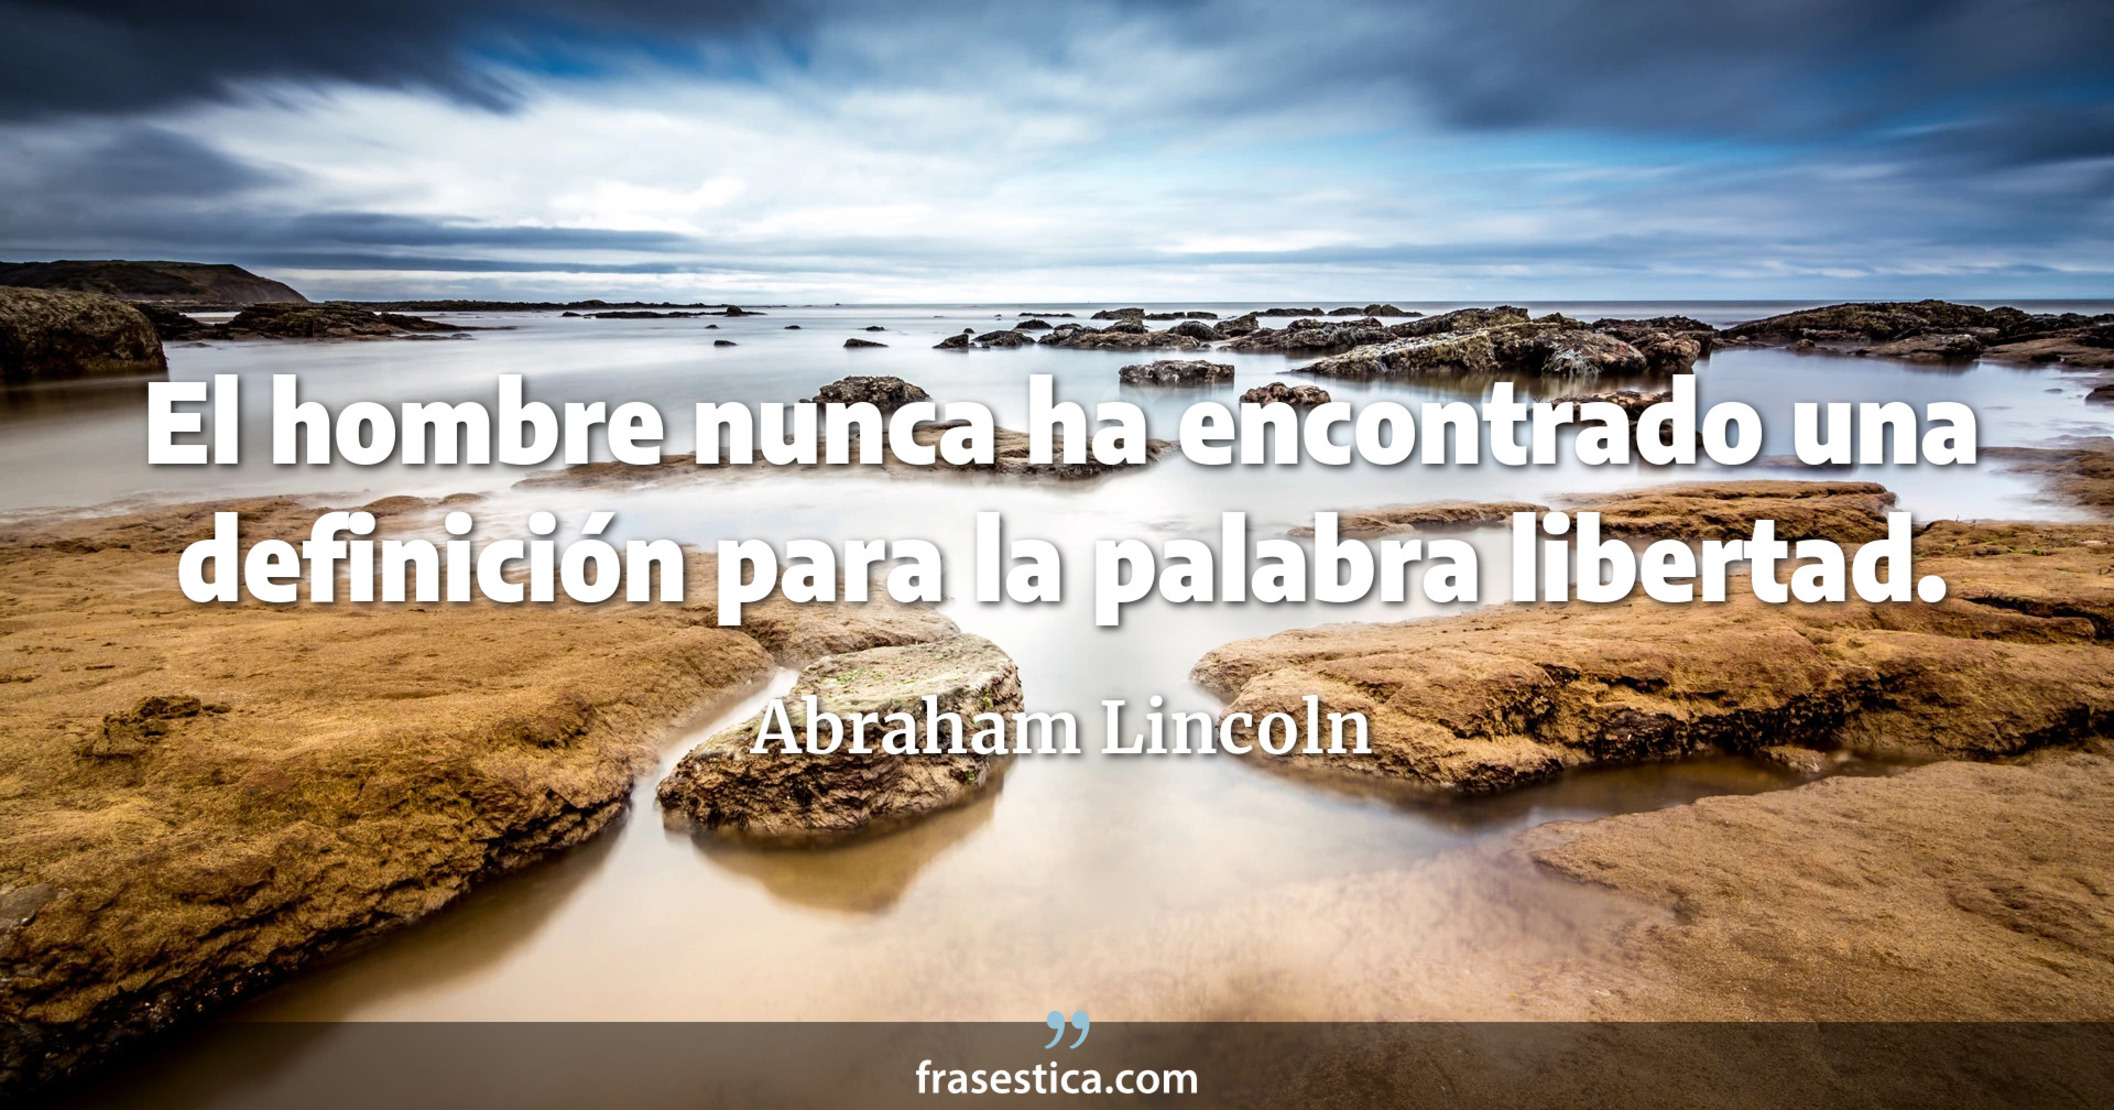 El hombre nunca ha encontrado una definición para la palabra libertad. - Abraham Lincoln